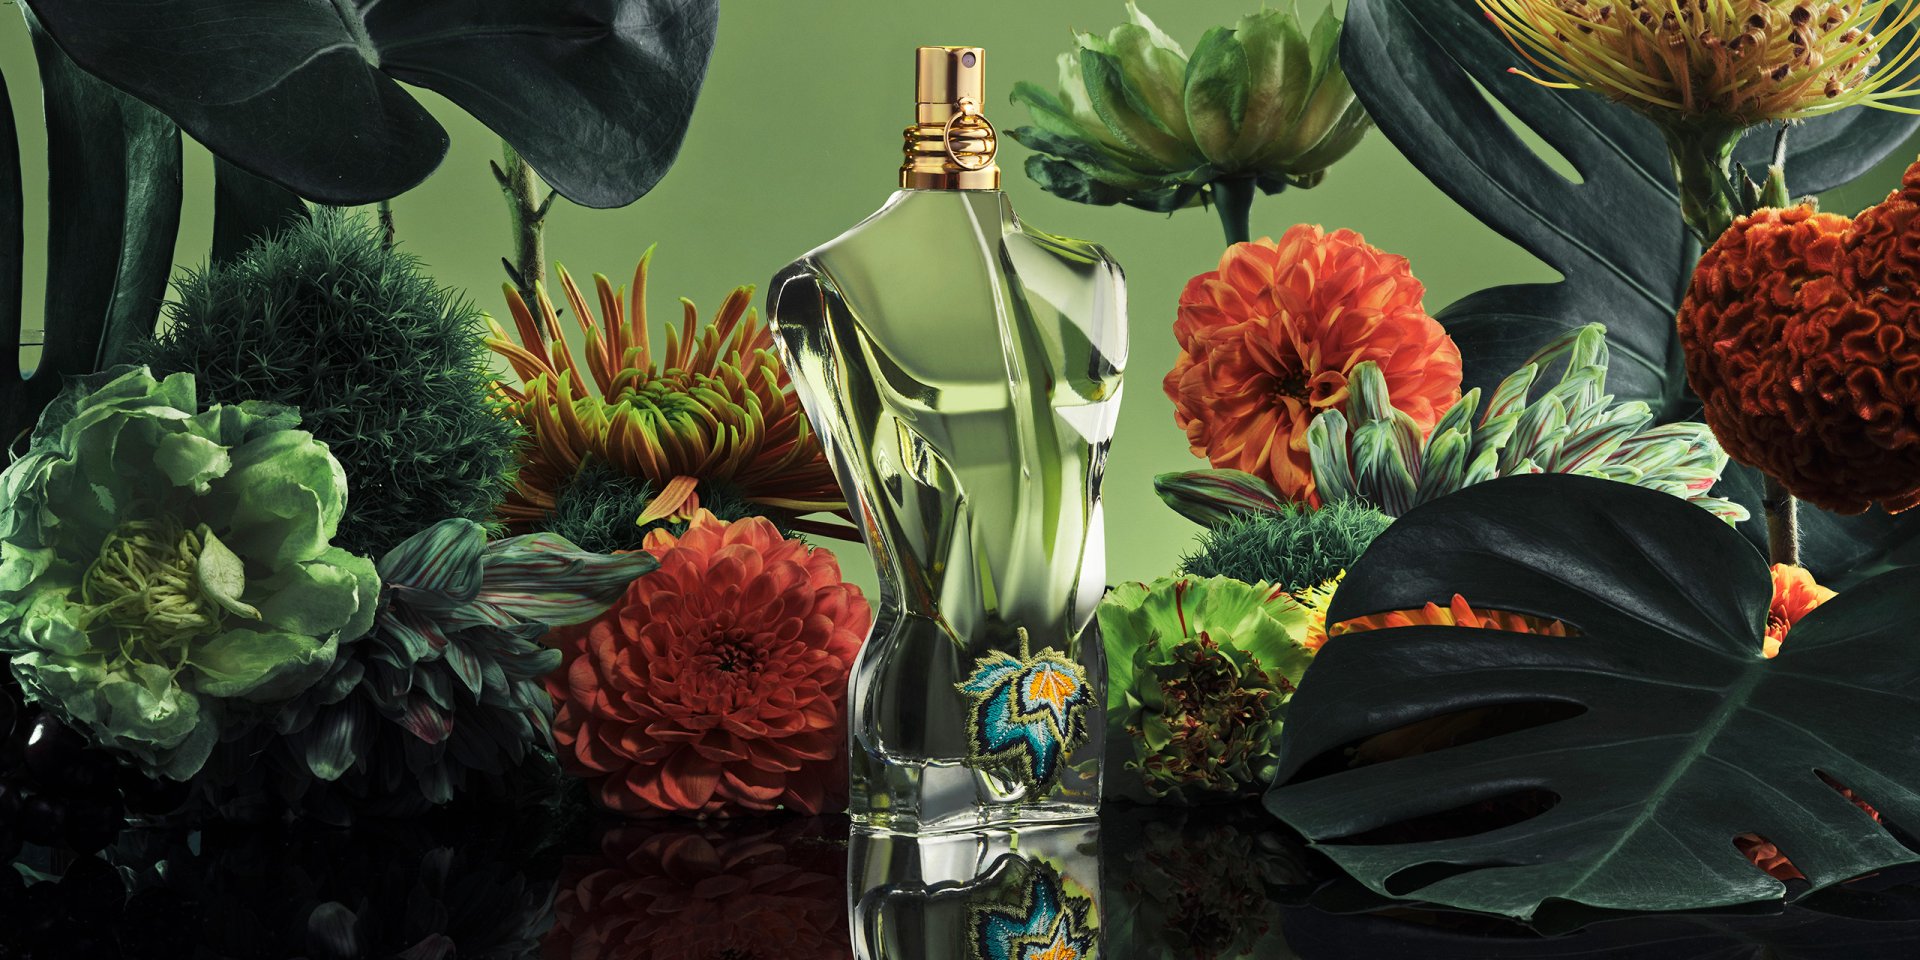 bottle le beau paradise garden eau de parfum jean paul gaultier